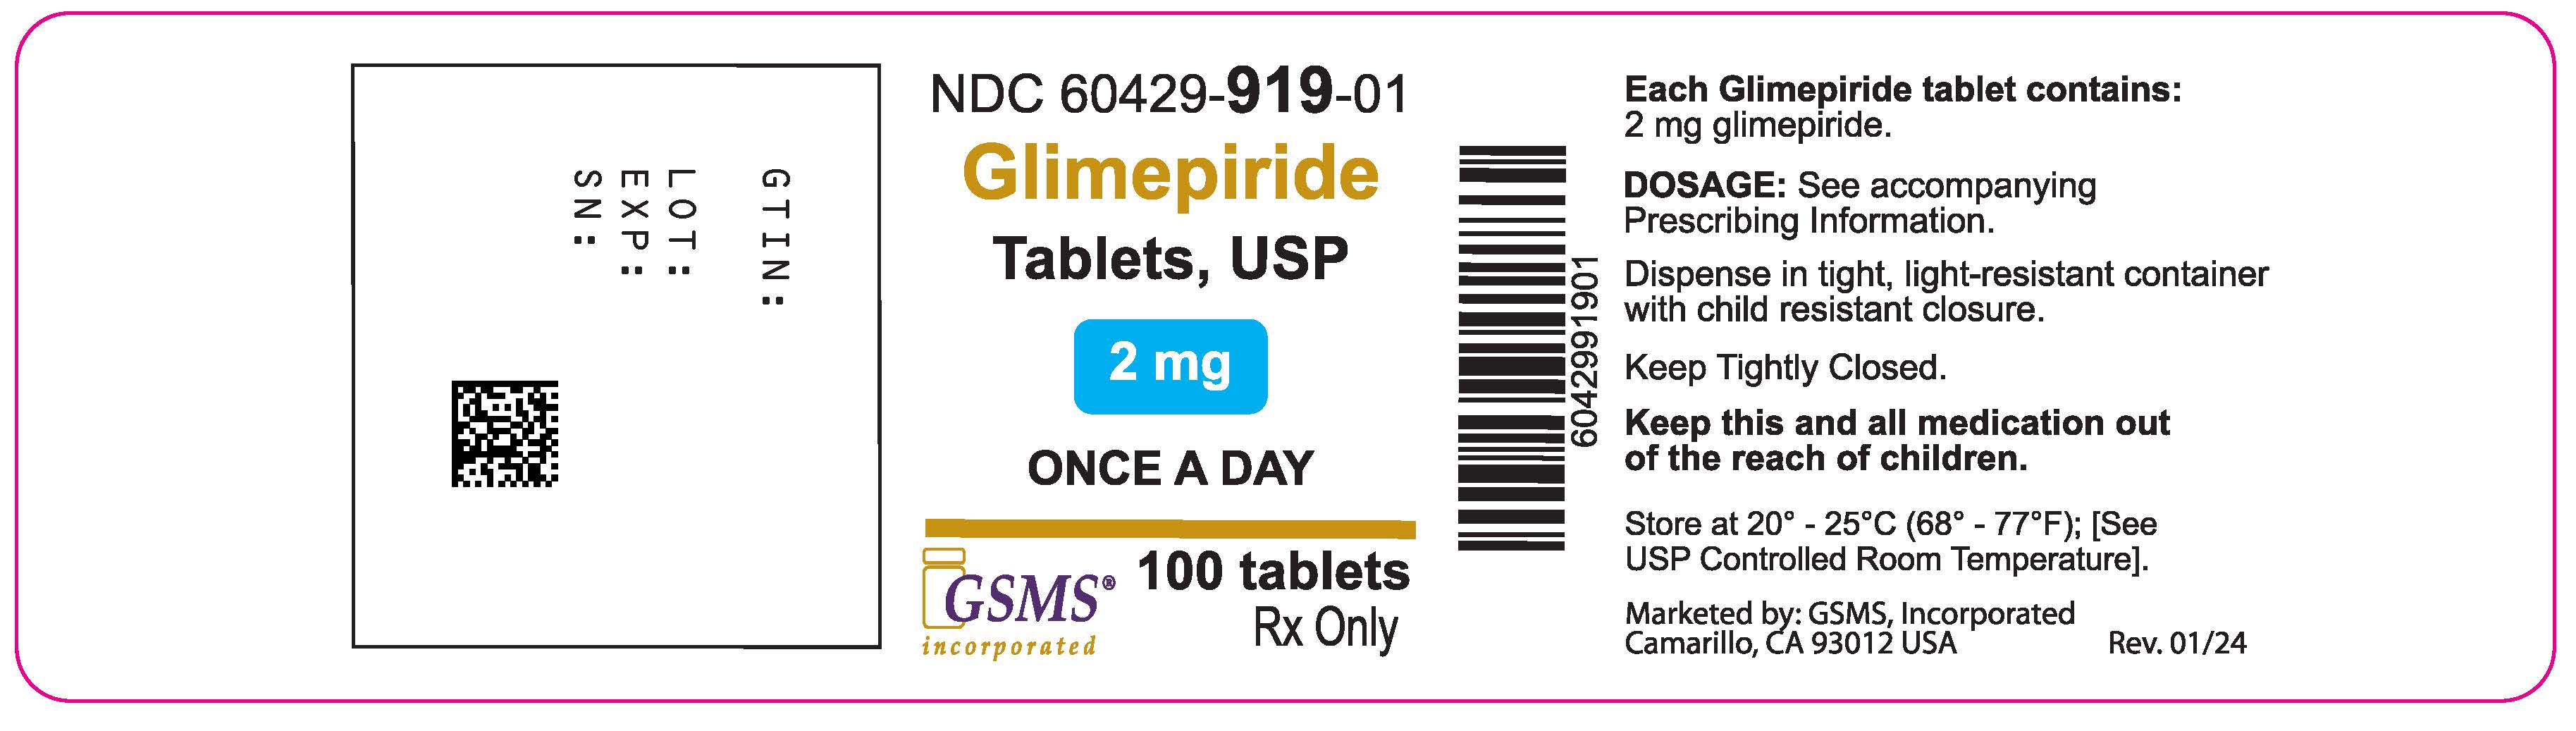 60429-919-01OL - Glimepiride 2 mg - Rev. 0124.jpg